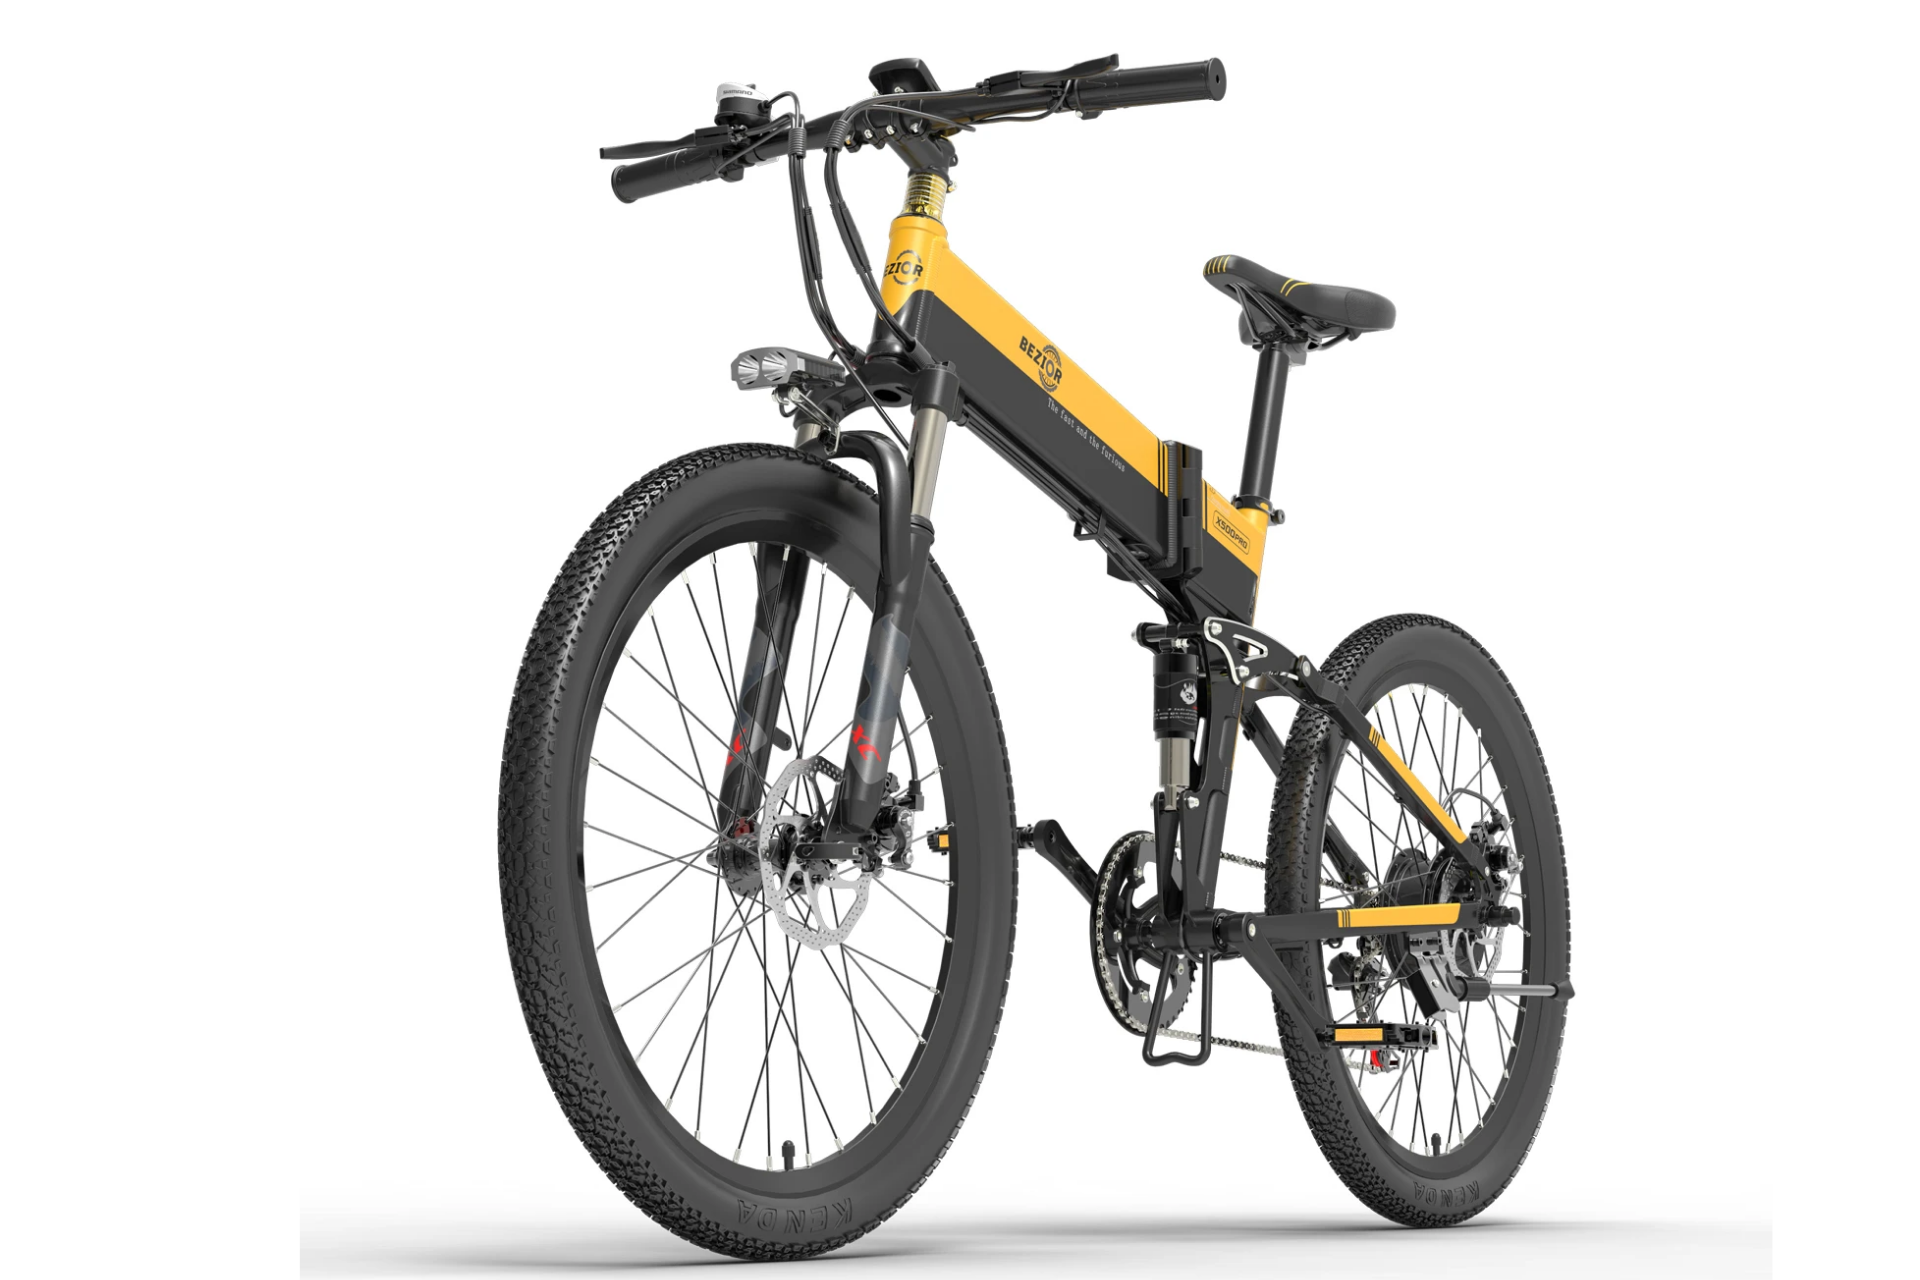 Le superbe vélo électrique Bezior X500 Pro en forte promotion (100km d'autonomie, écran LCD,...)